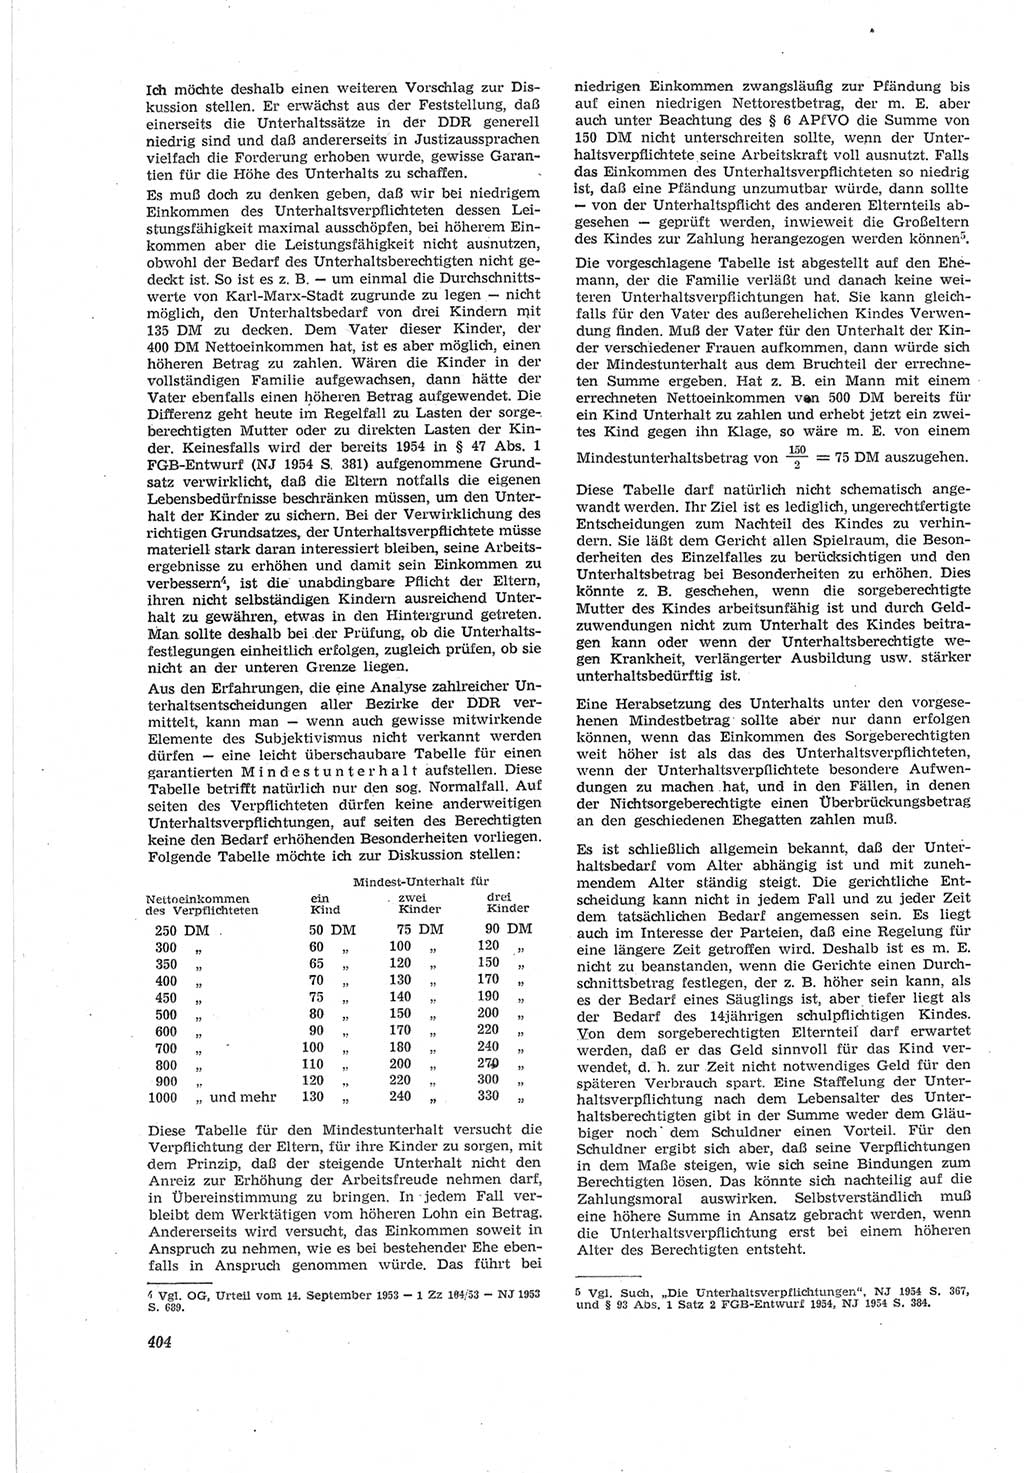 Neue Justiz (NJ), Zeitschrift für Recht und Rechtswissenschaft [Deutsche Demokratische Republik (DDR)], 18. Jahrgang 1964, Seite 404 (NJ DDR 1964, S. 404)